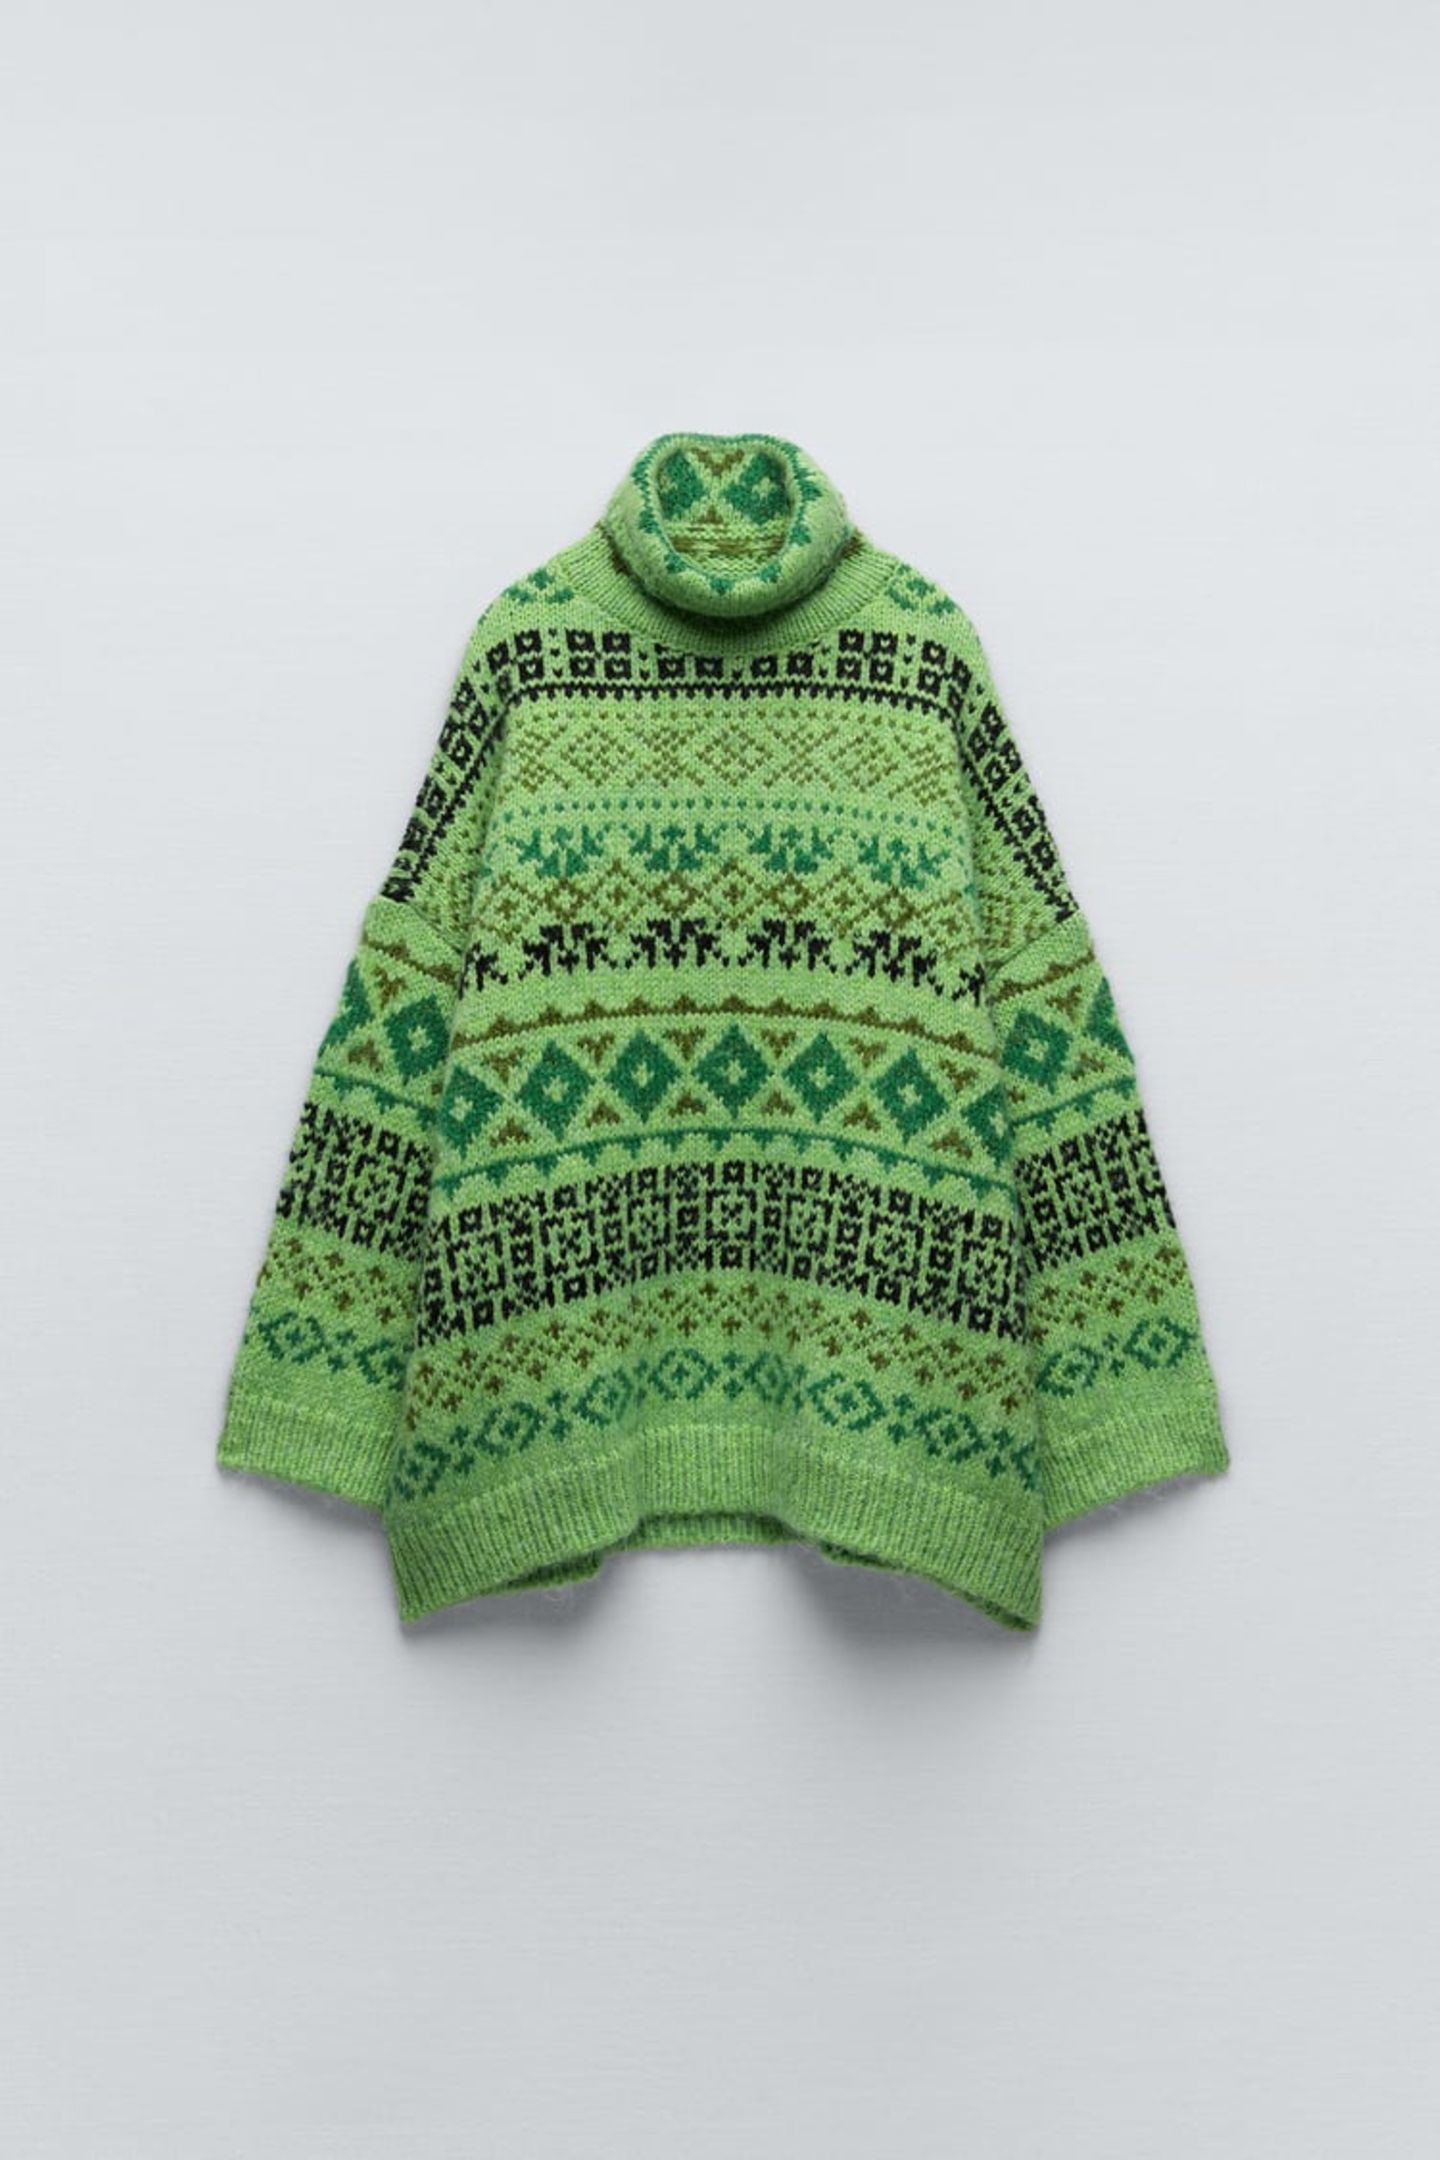 Farbakzent gefällig? Dann ist dieser grüne Pullover mit klassischem Jacquardmuster genau das Richtige! Gesehen bei Zara, für ca. 50 Euro erhältlich.